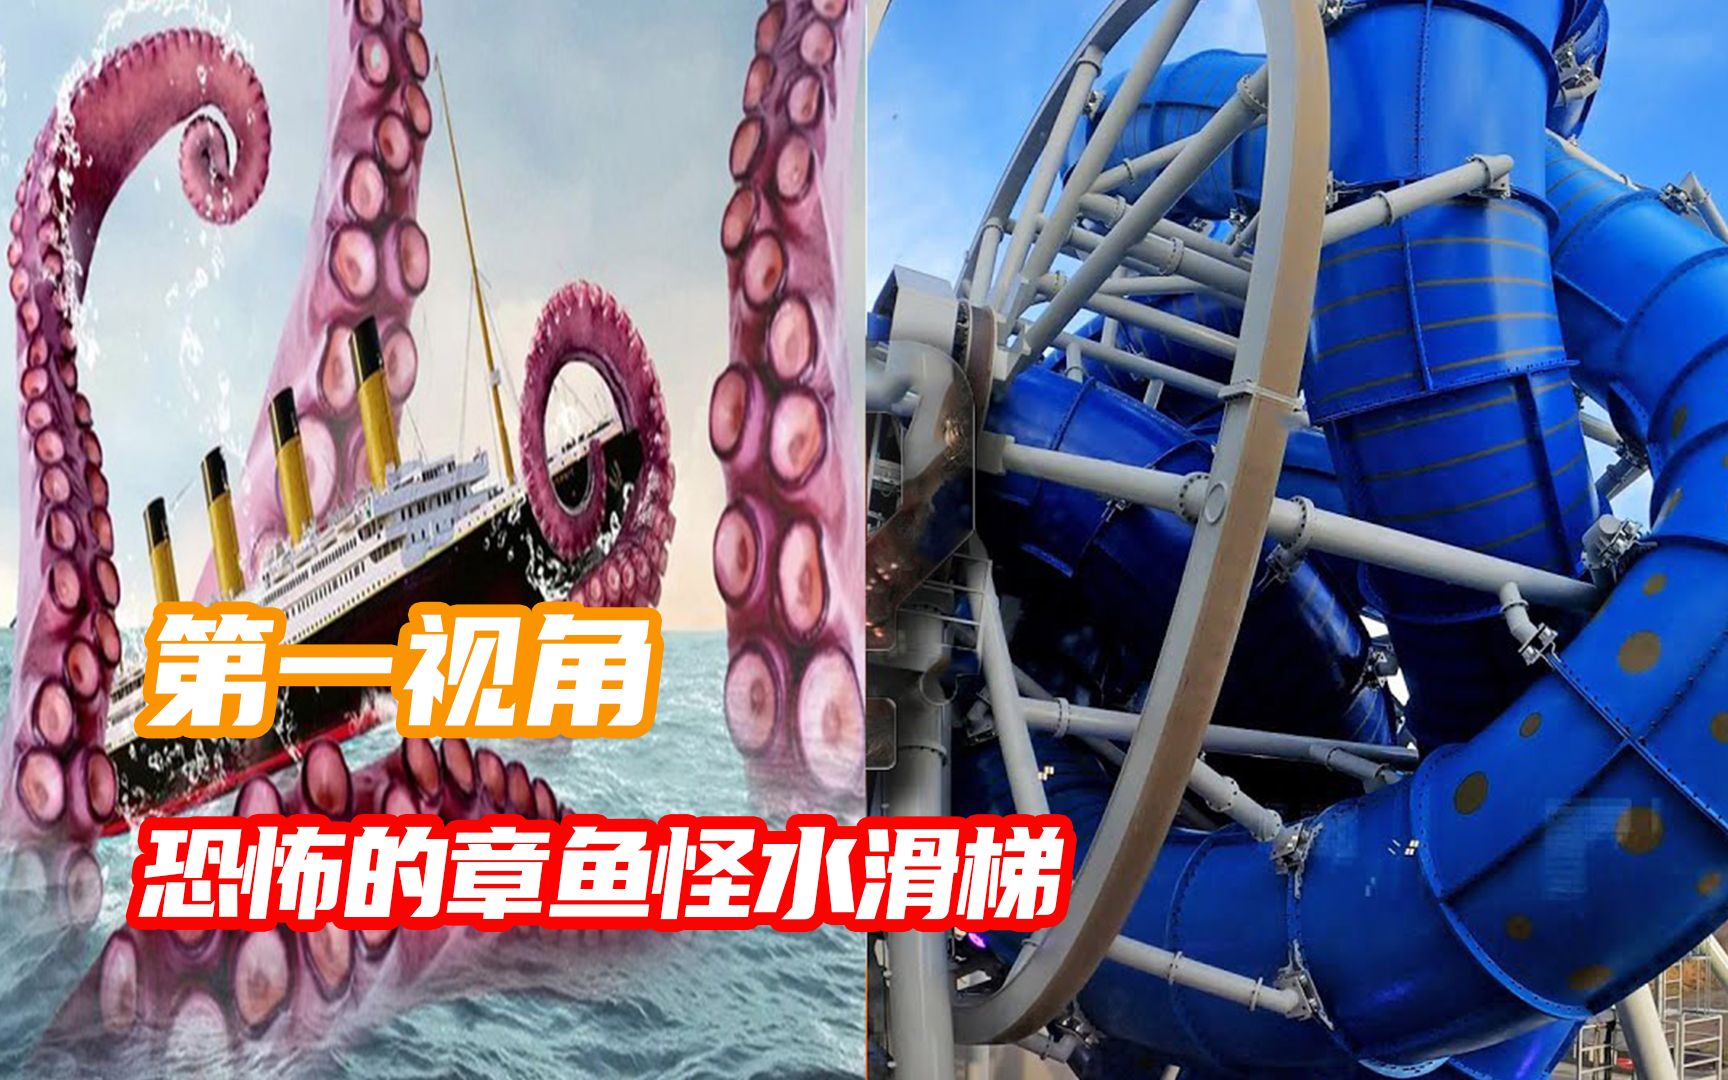 你敢挑战恐怖的章鱼怪水滑梯吗？第一视角带你体验刺激！